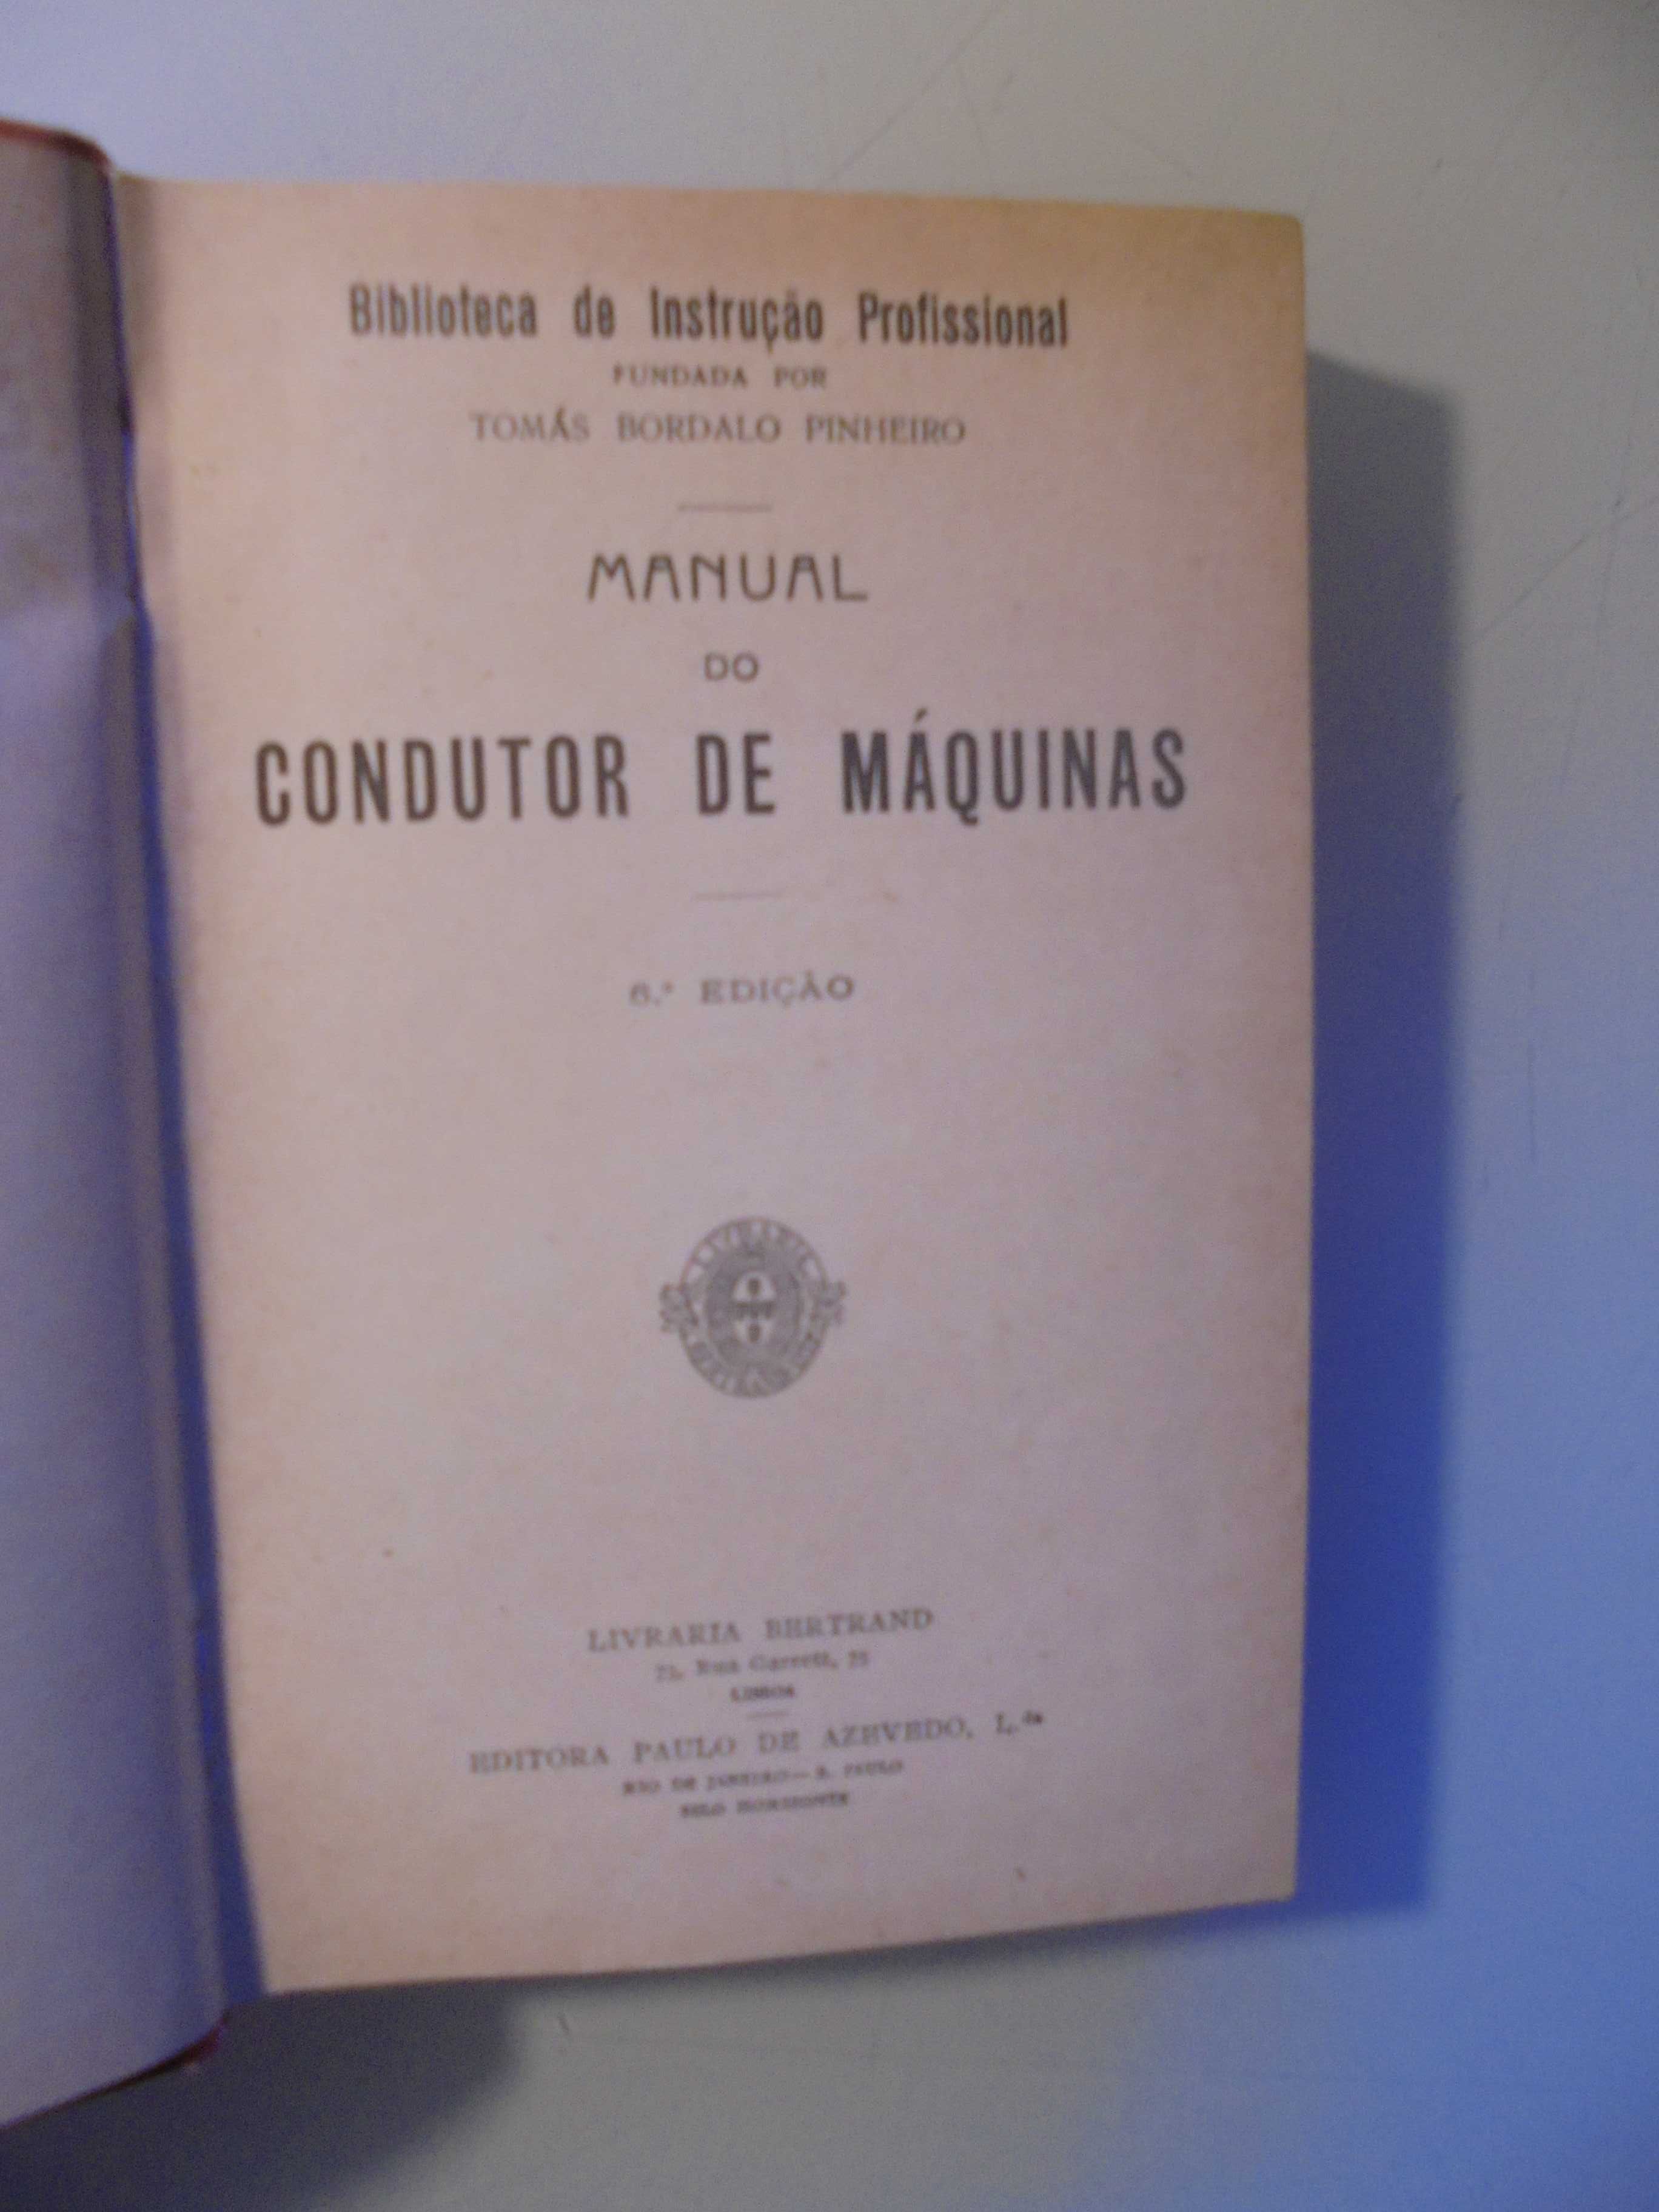 Manual do Condutor de Máquinas;Biblioteca de Instrução Profissional